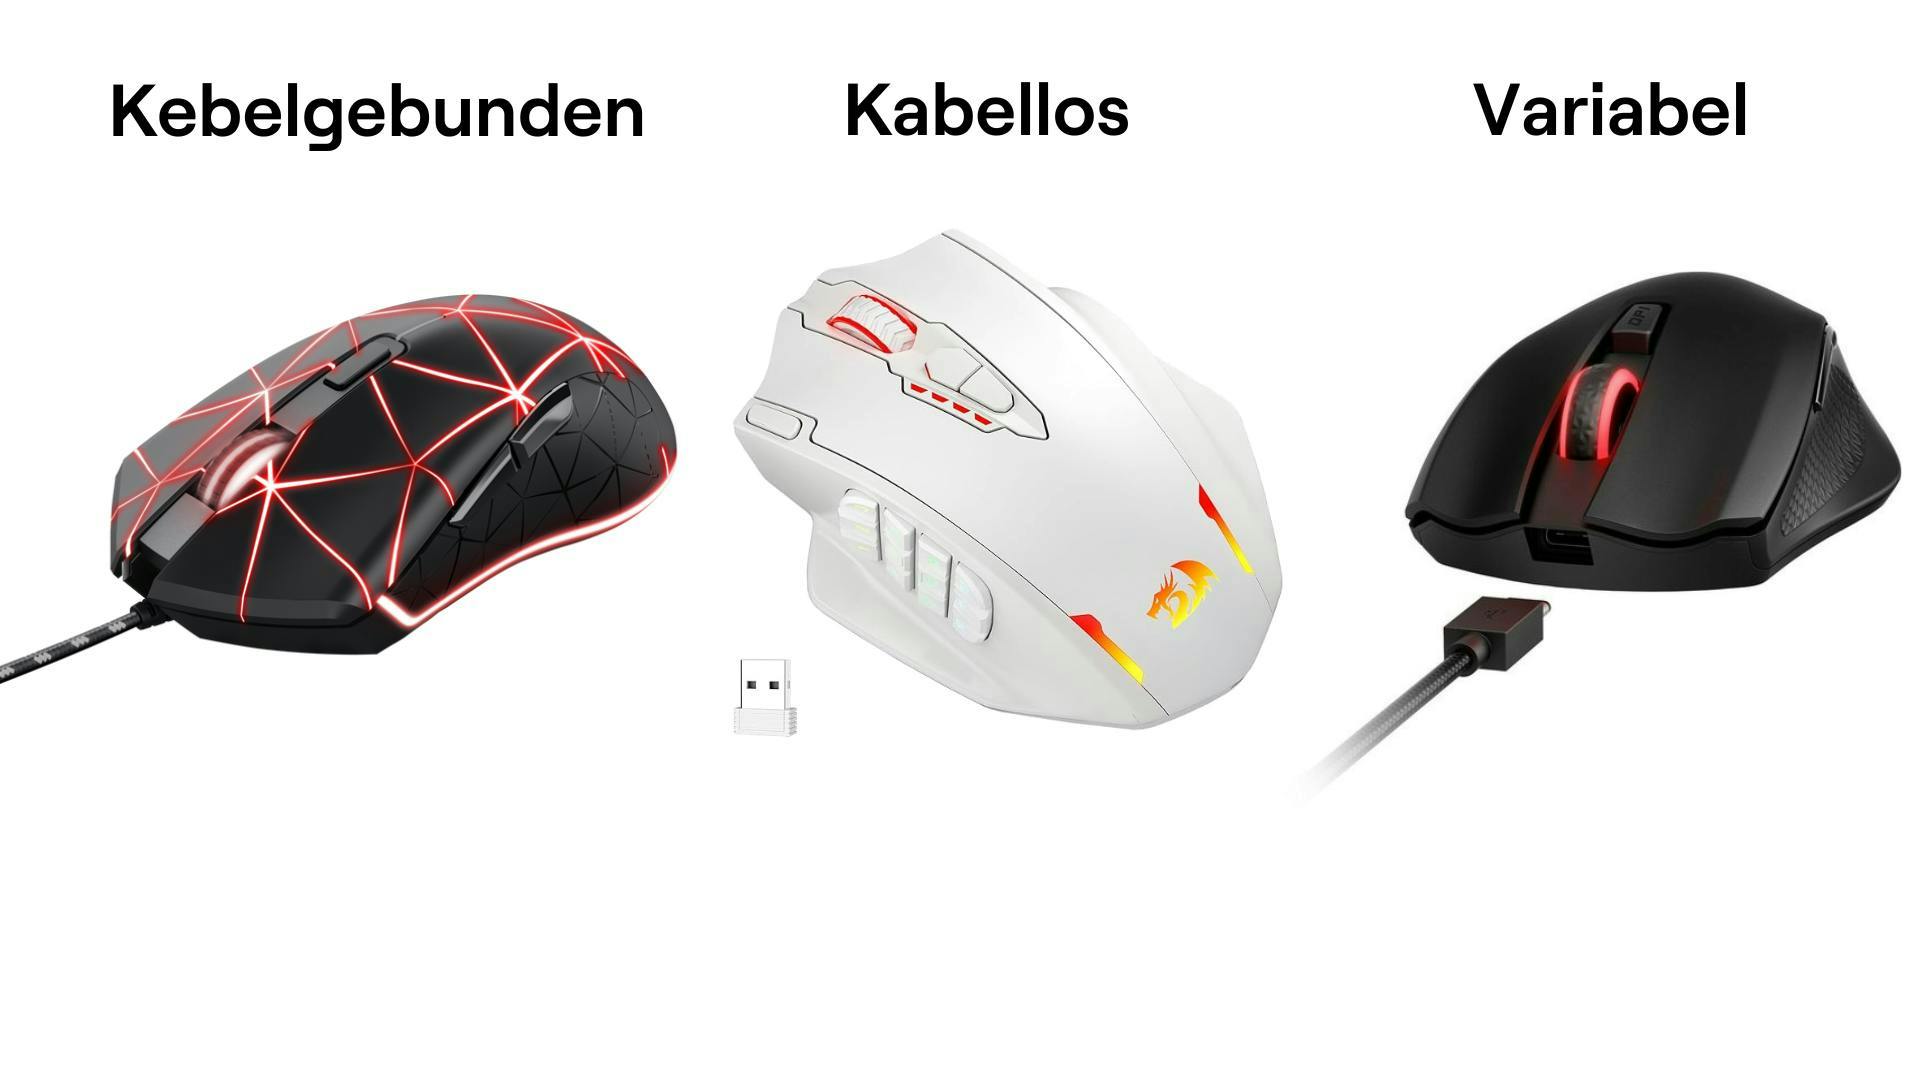 Drei verschiedene Gaming Mäuse, kabelgebunden, kabellos und variabel. 